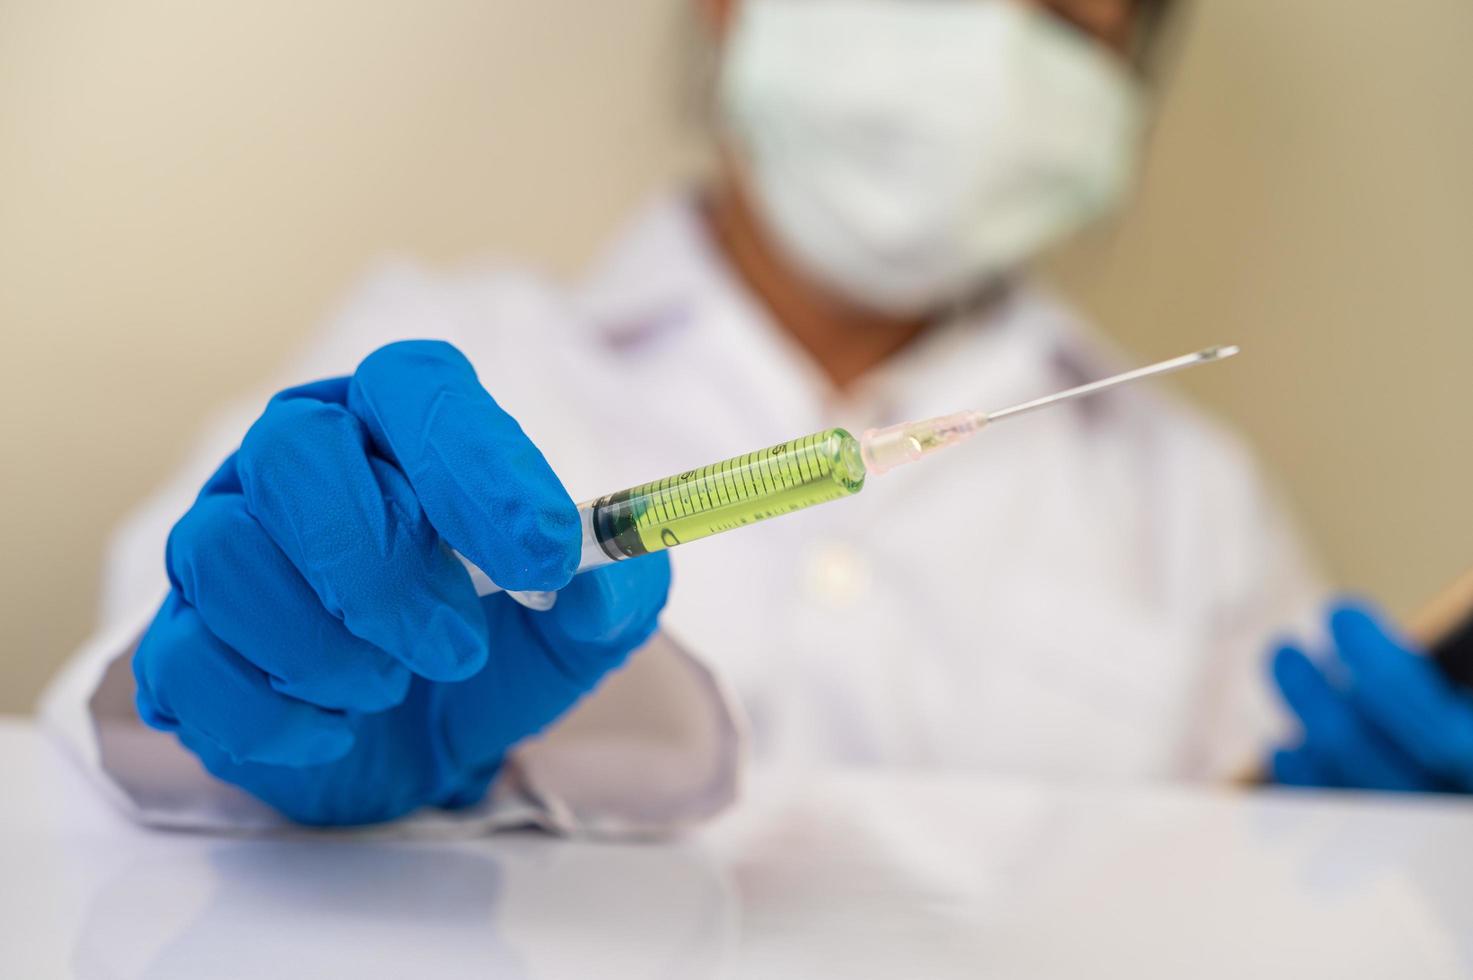 Wissenschaftler tragen Masken und Handschuhe und halten eine Spritze mit einem Covid-19-Impfstoff foto